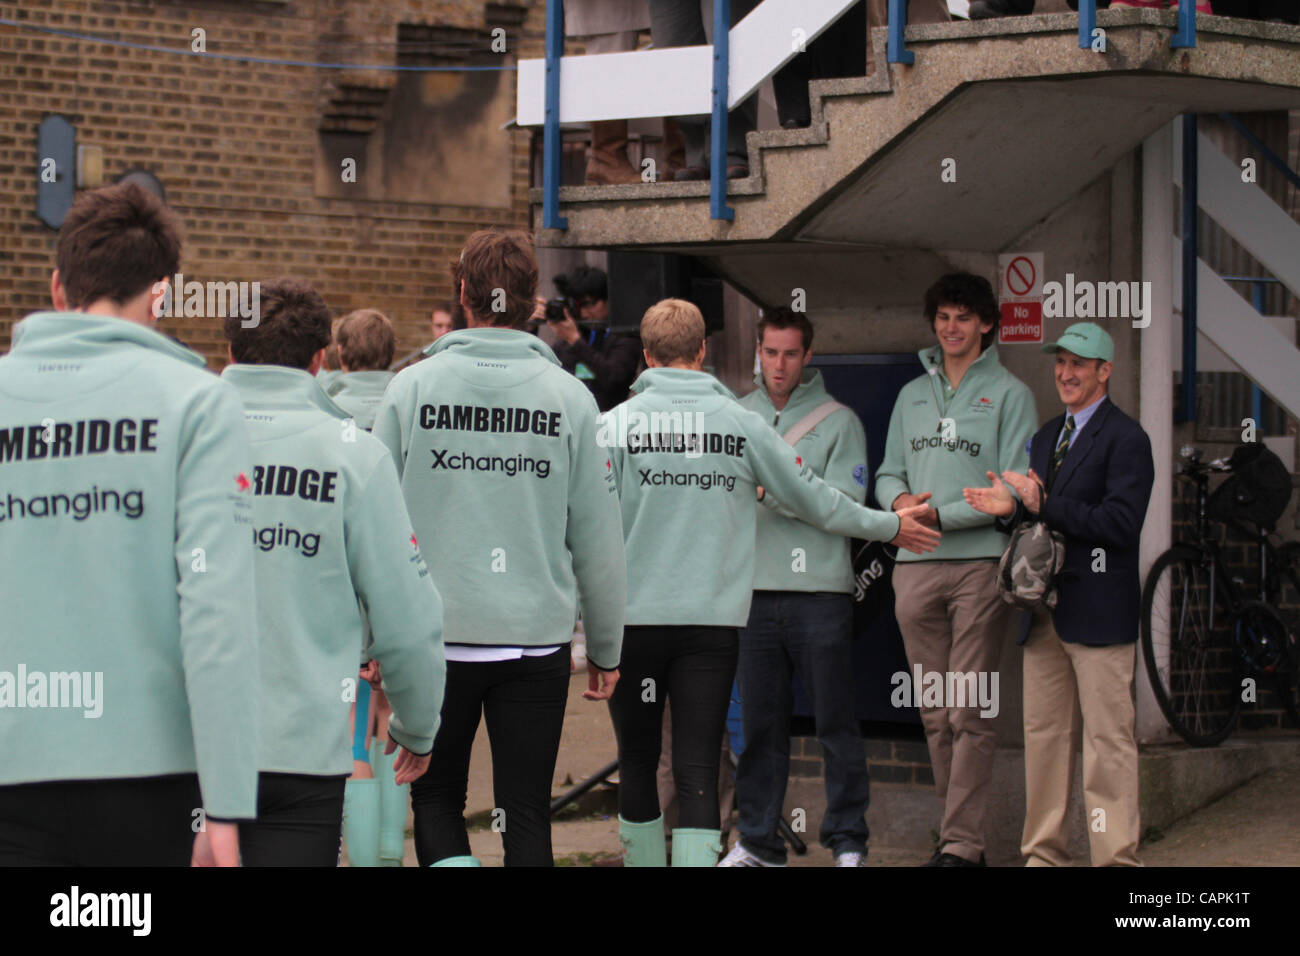 London, UK, samedi 7 avril 2012.L'équipe d'aviron de Cambridge (photo) à l'Université de Cambridge et Oxford Xchanging Boat Race sur la Tamise. Banque D'Images